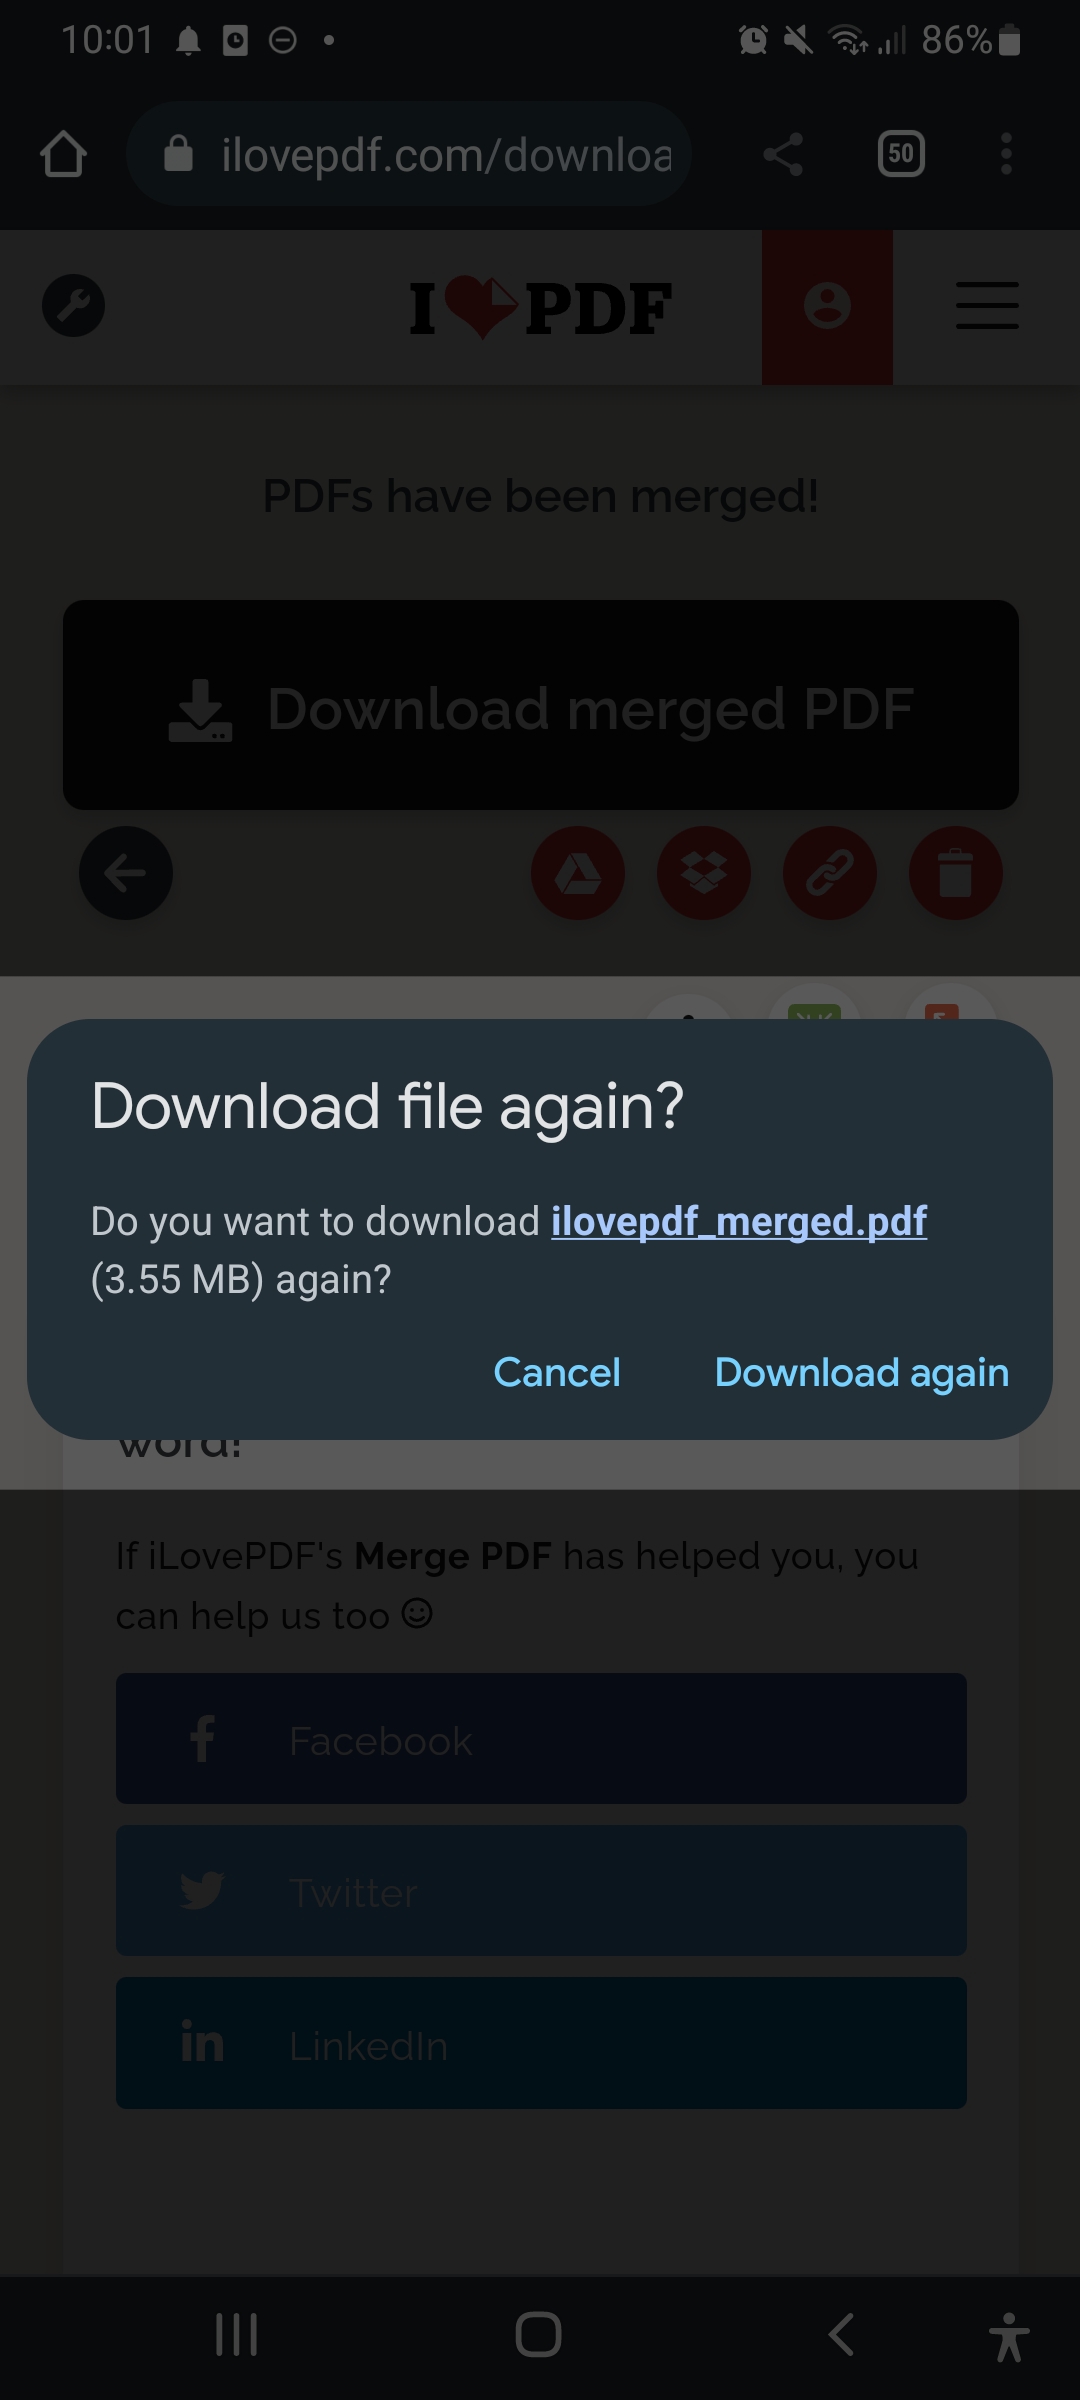 cara combine file pdf di android tanpa aplikasi gratis